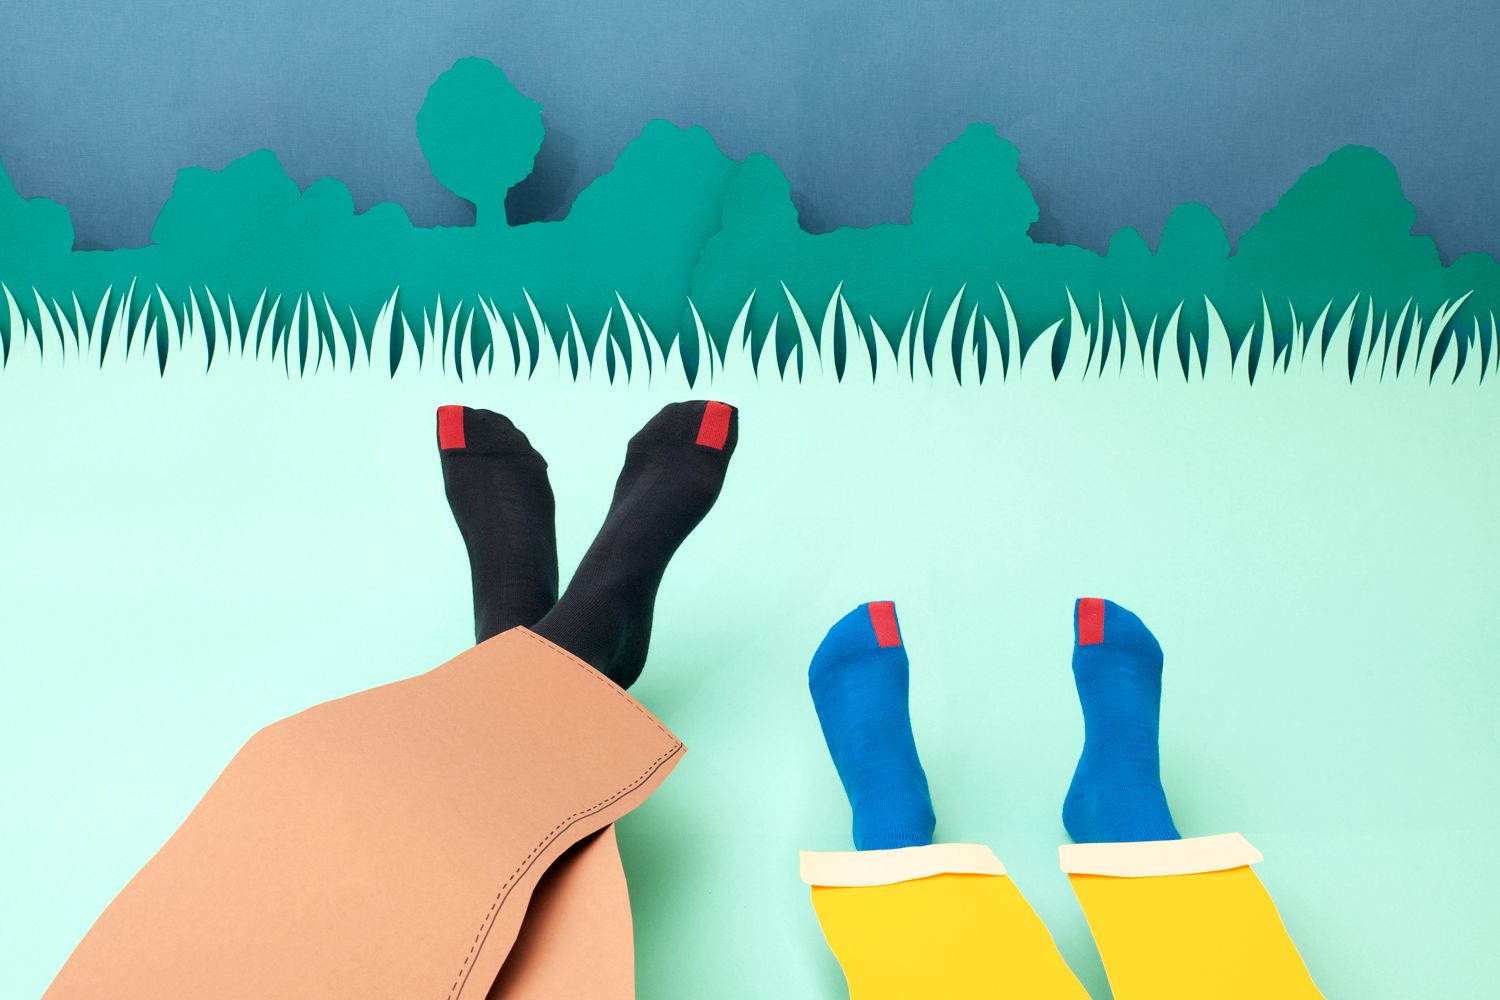 plus12socks Socken Zeichnung mit Füßen von Erwachsenen und Kindern